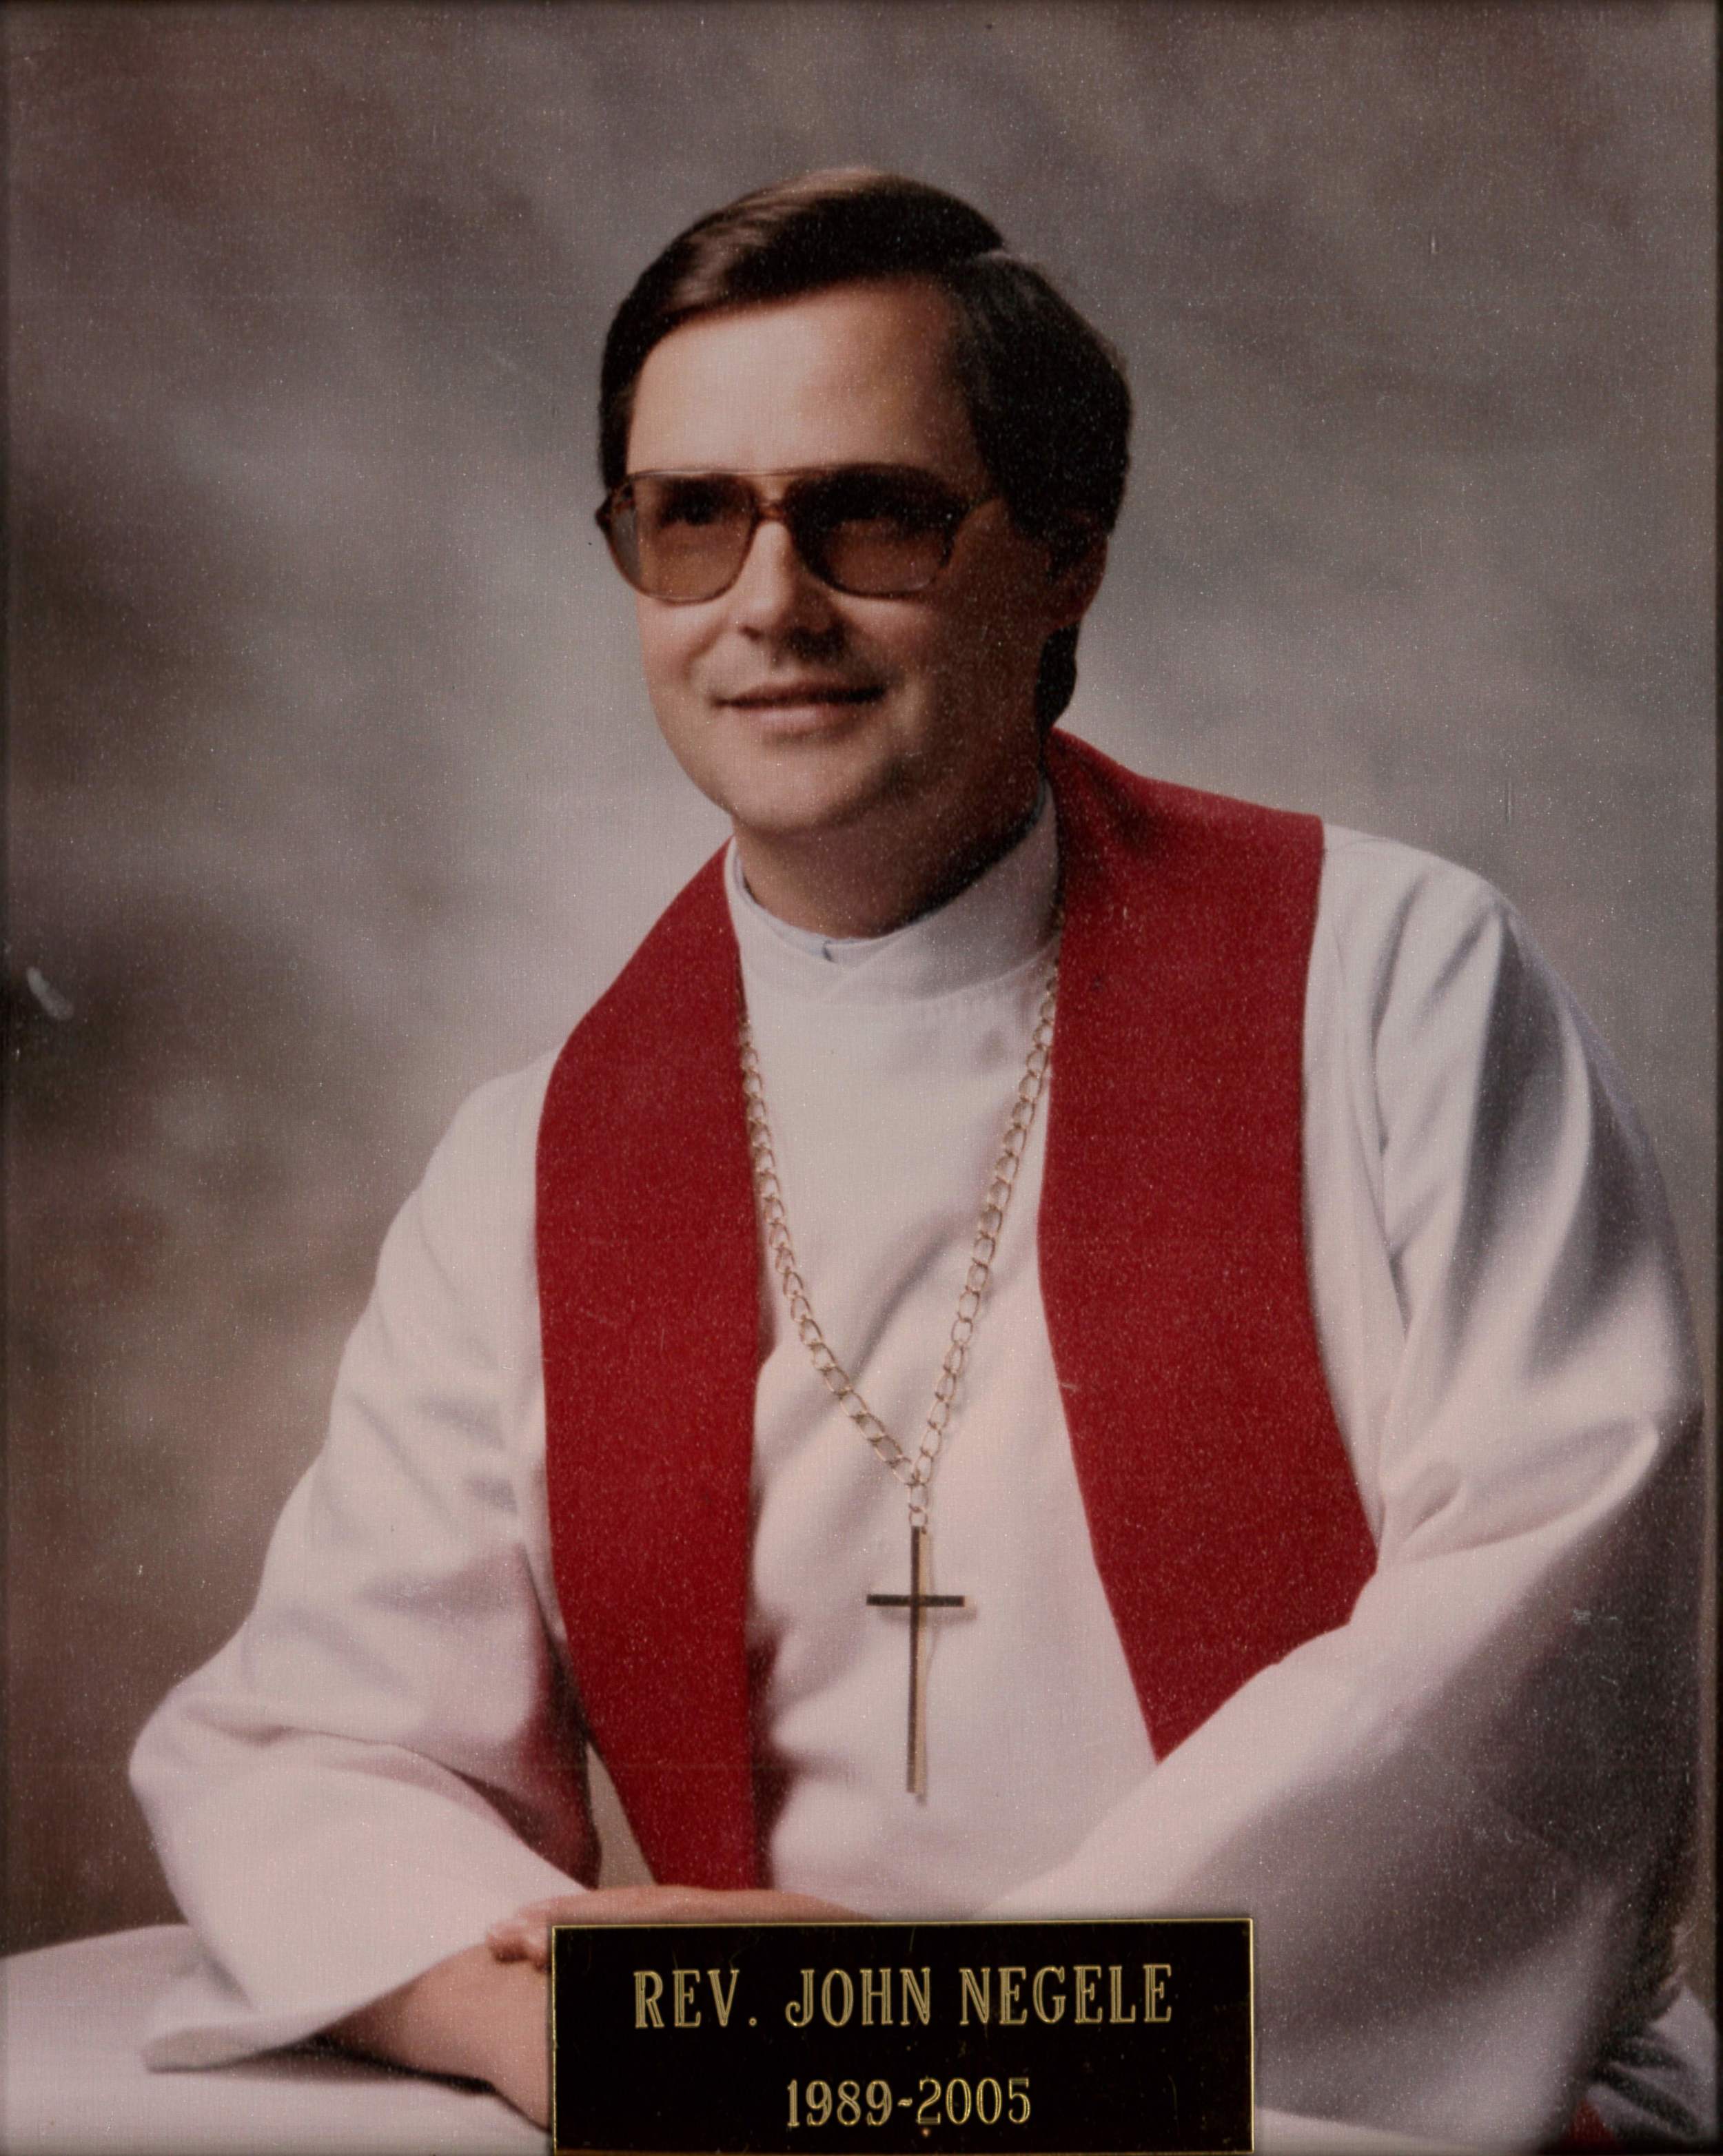 Rev. John Negele